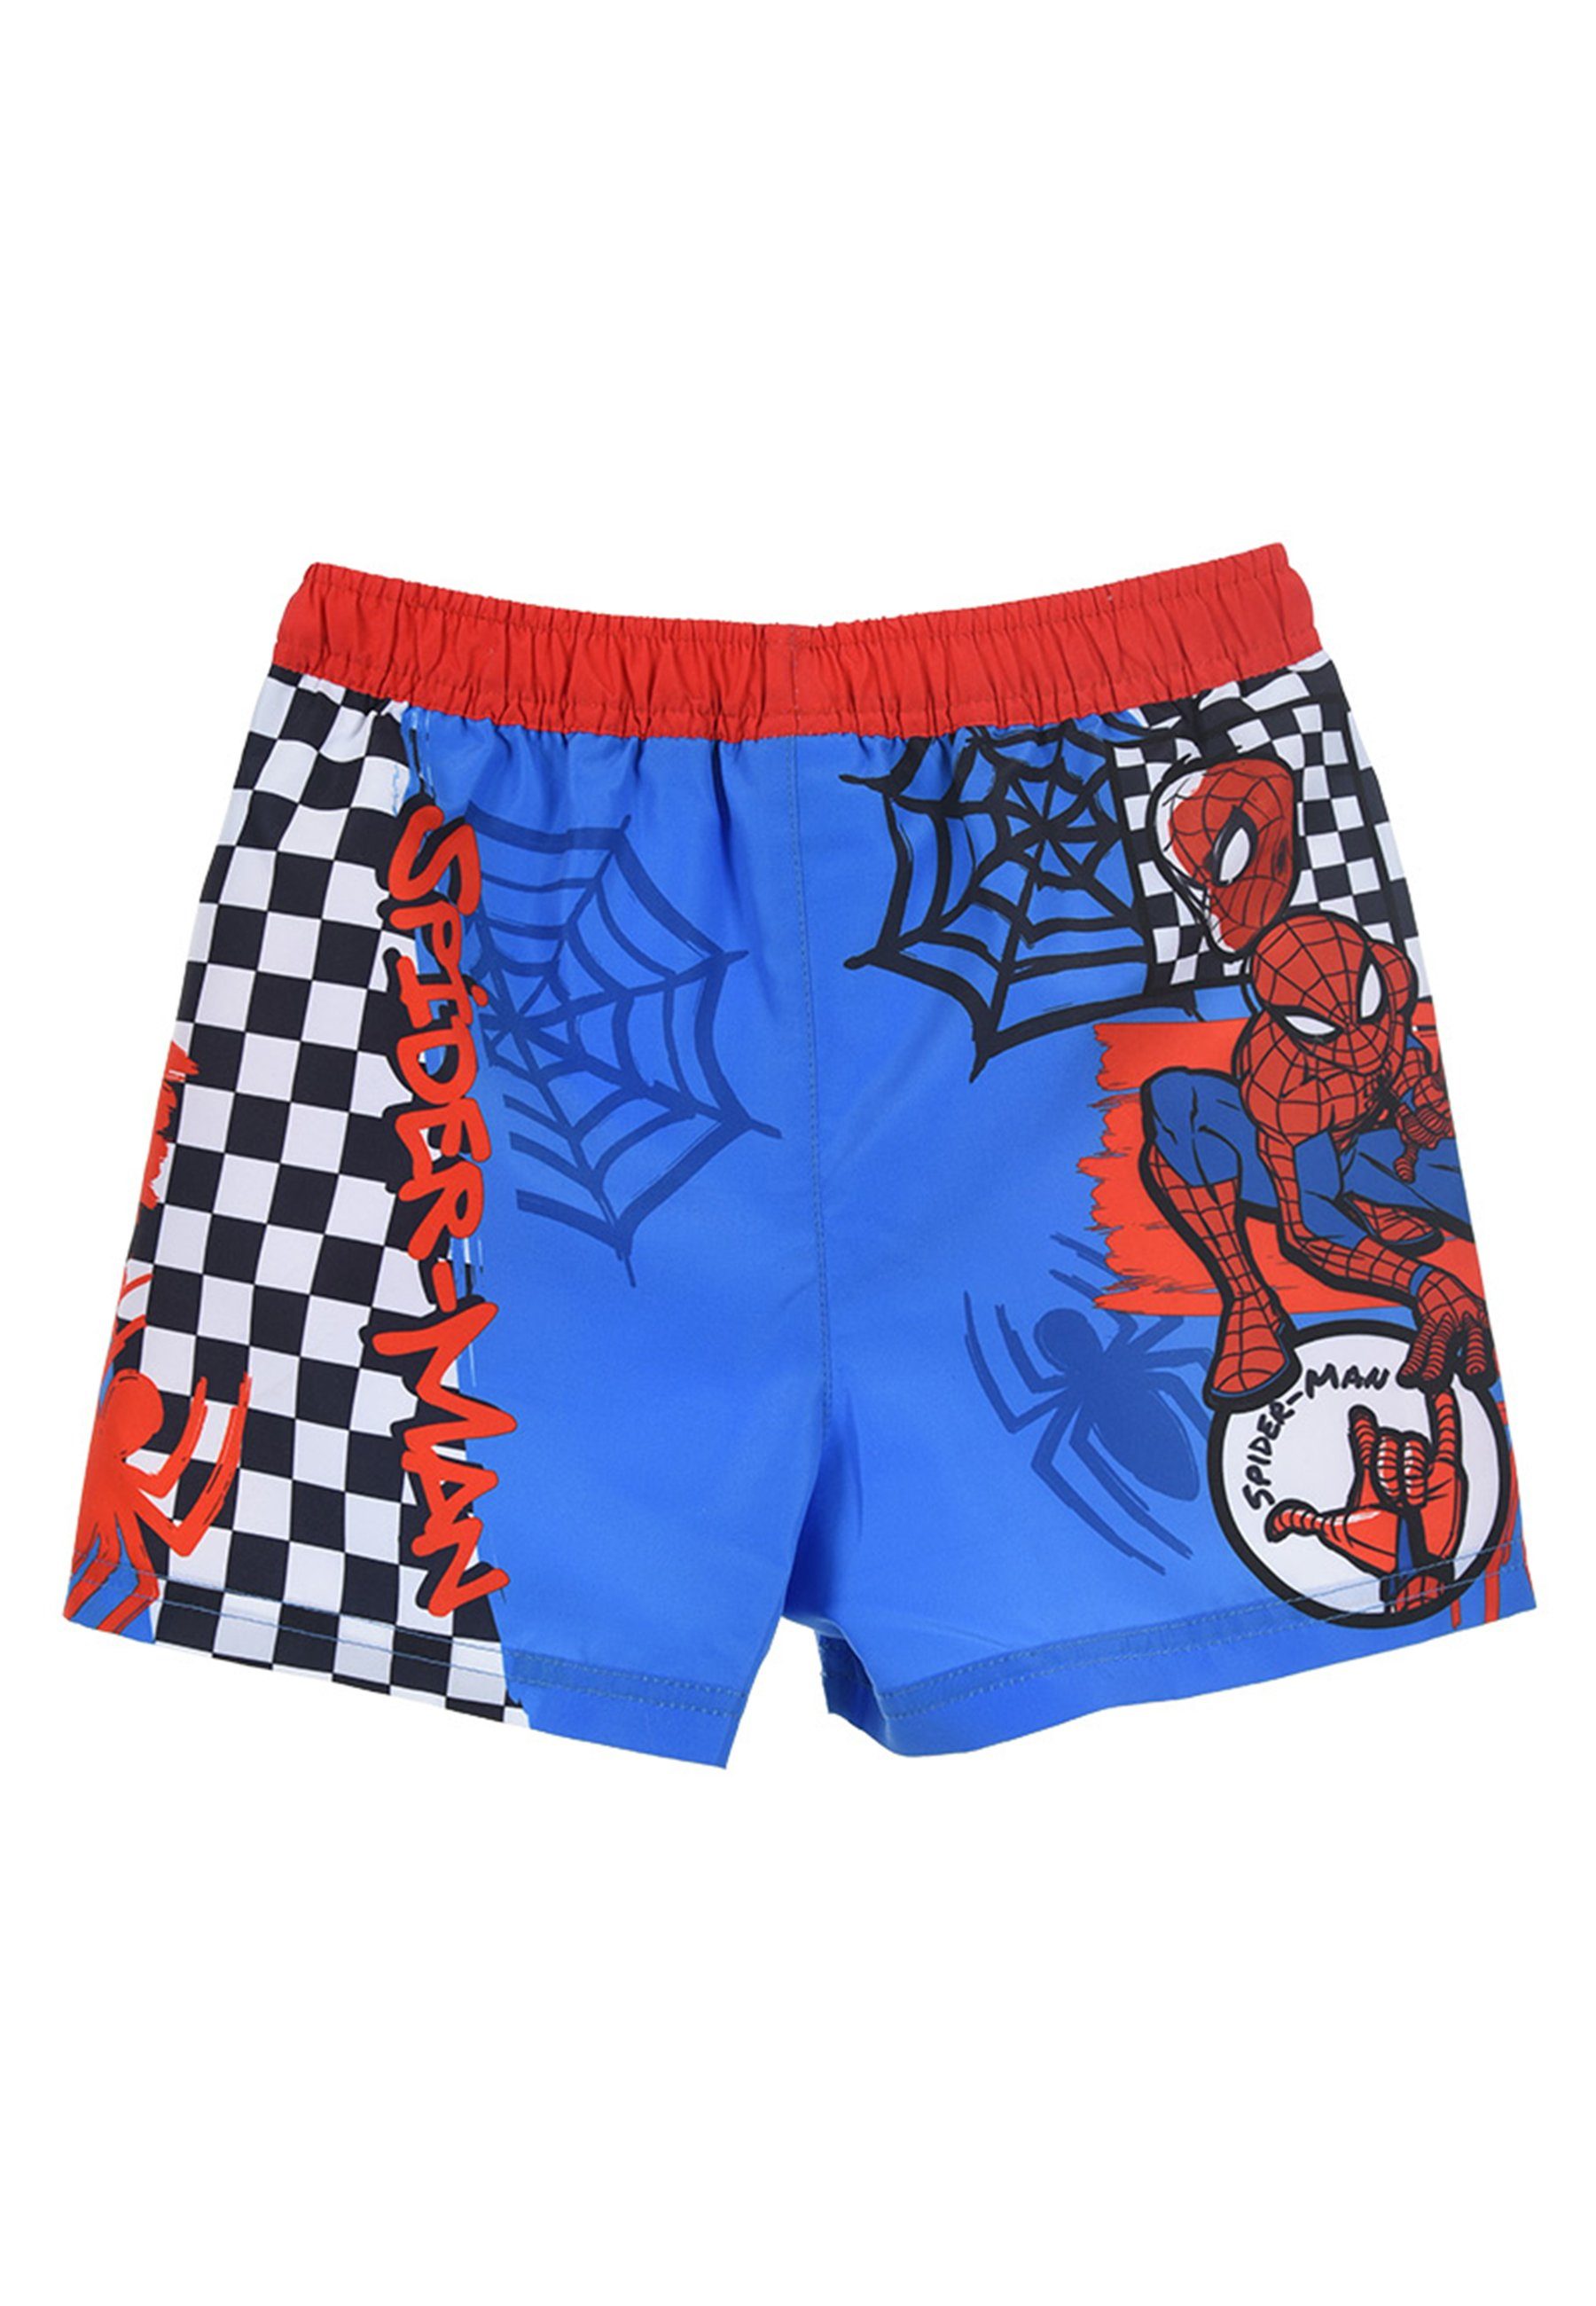 Blau Jungen Badehose Bermuda-Shorts Spiderman Marvel Kinder Badeshorts Badepants